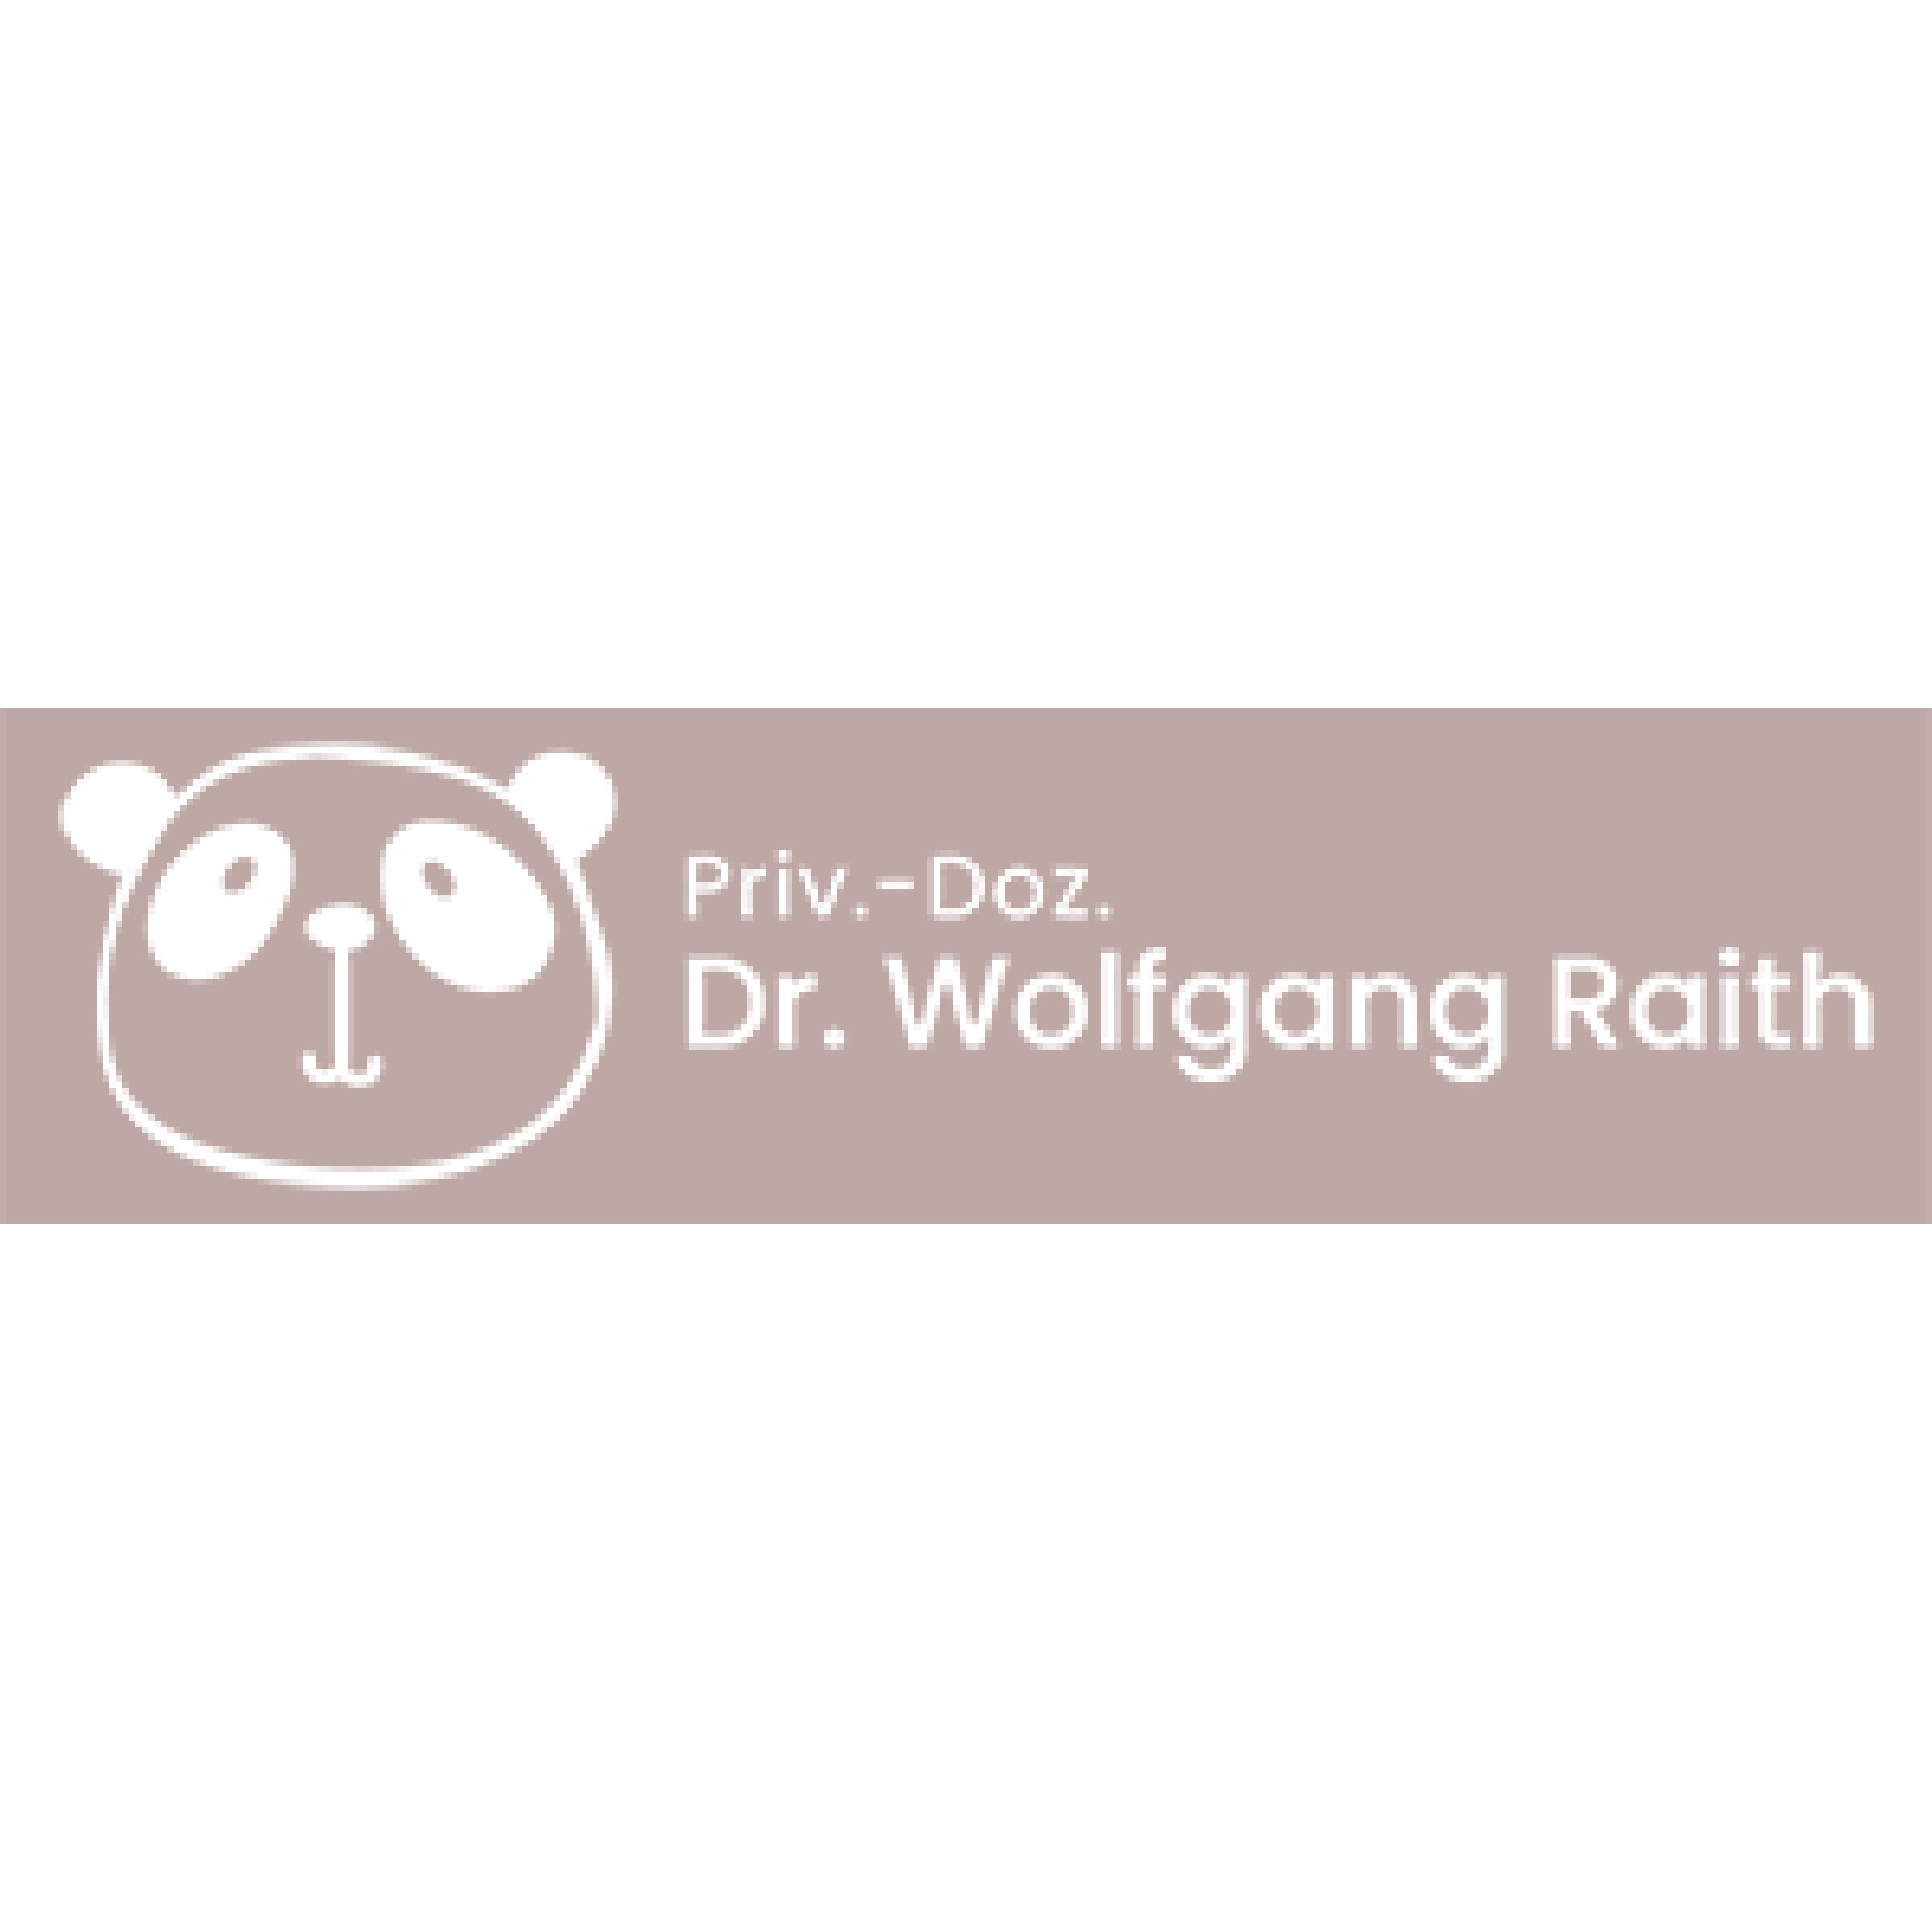 Priv.-Doz. Dr. med. Wolfgang Raith    8010 Graz